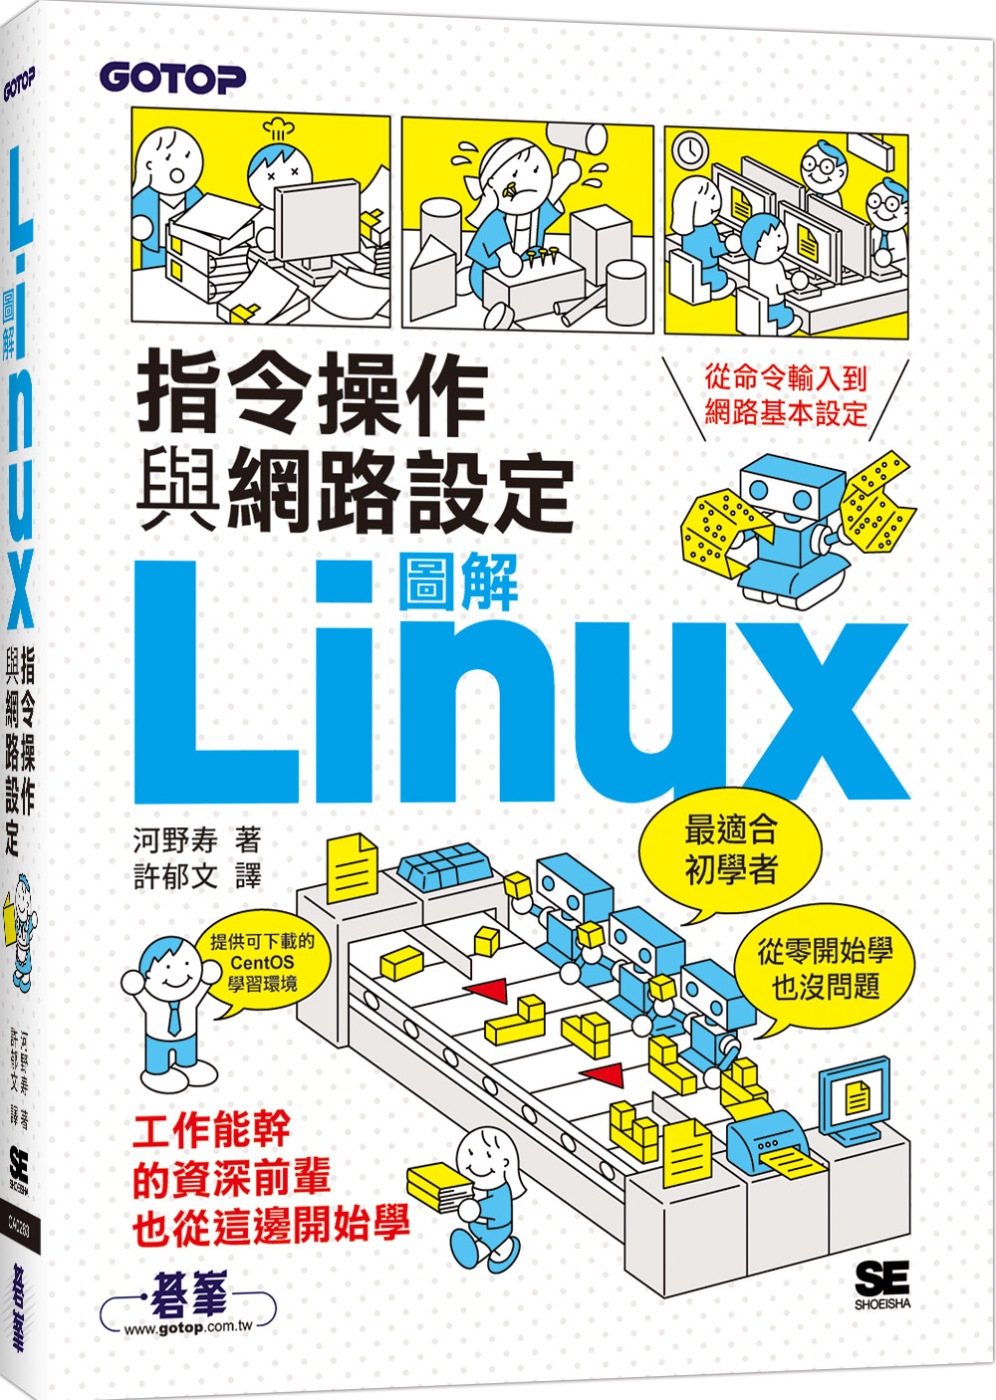 圖解LINUX指令操作與網路設定